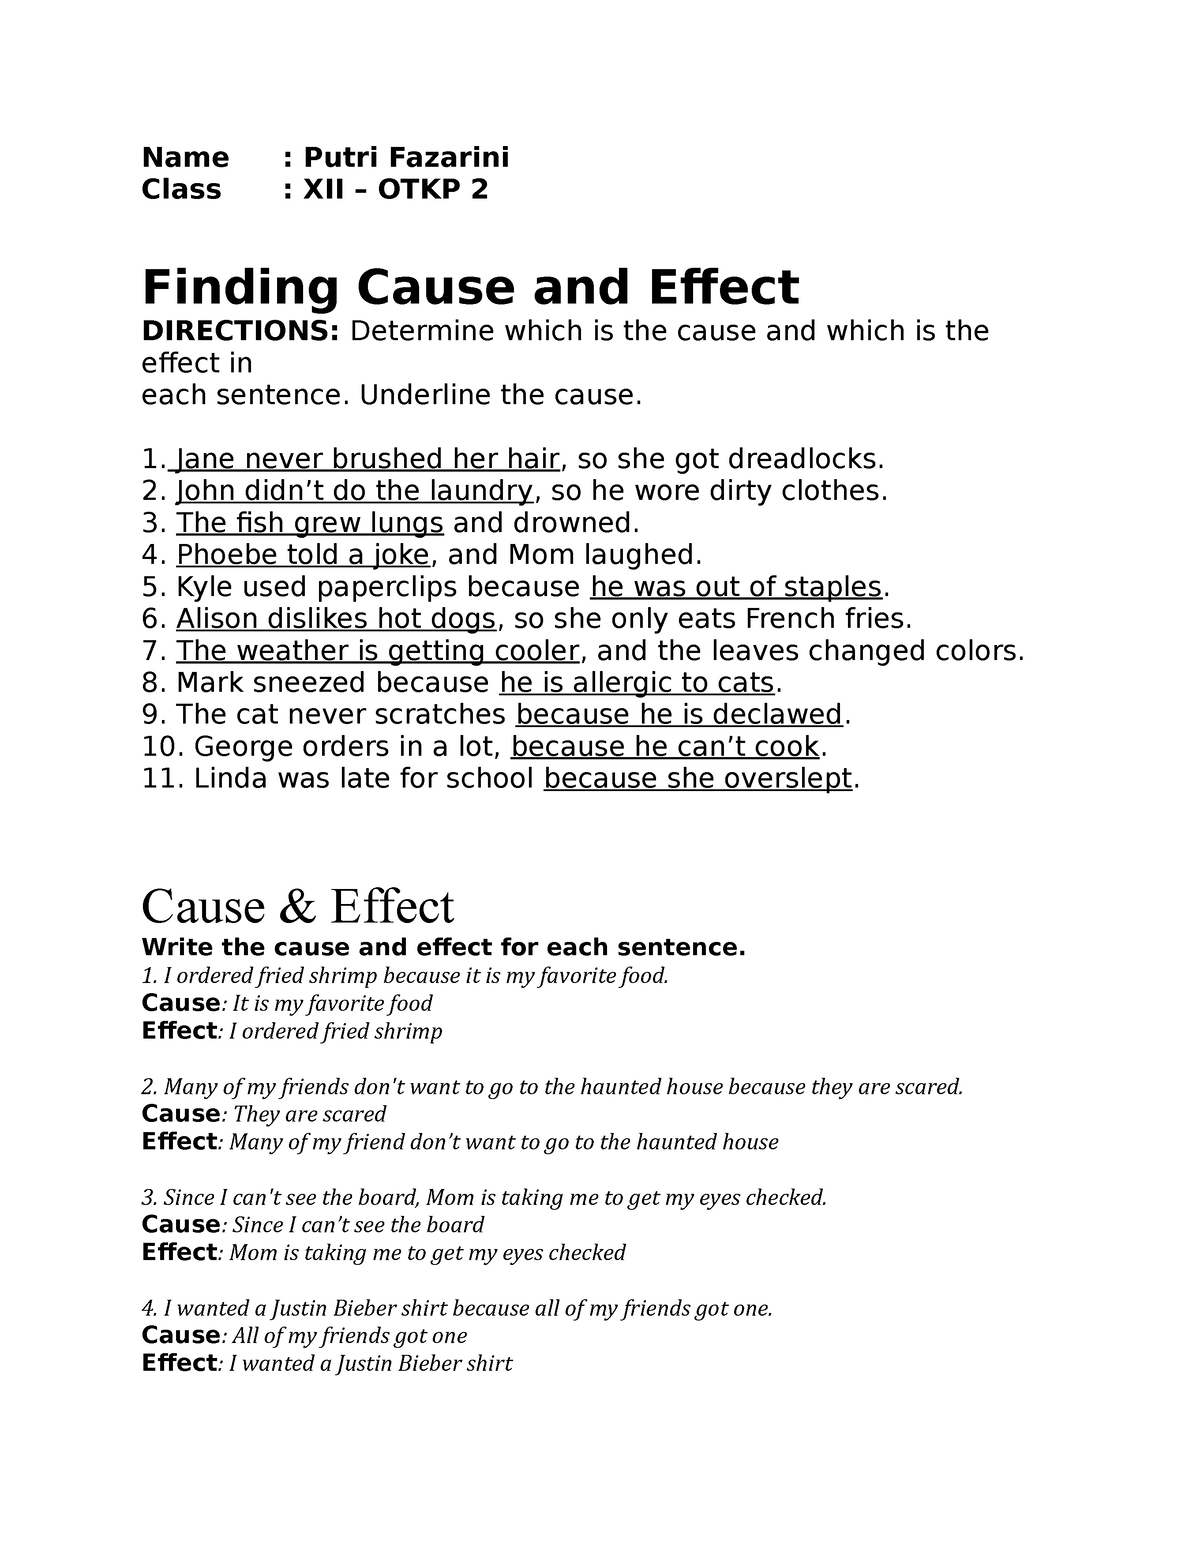 soal essay bahasa inggris tentang cause and effect